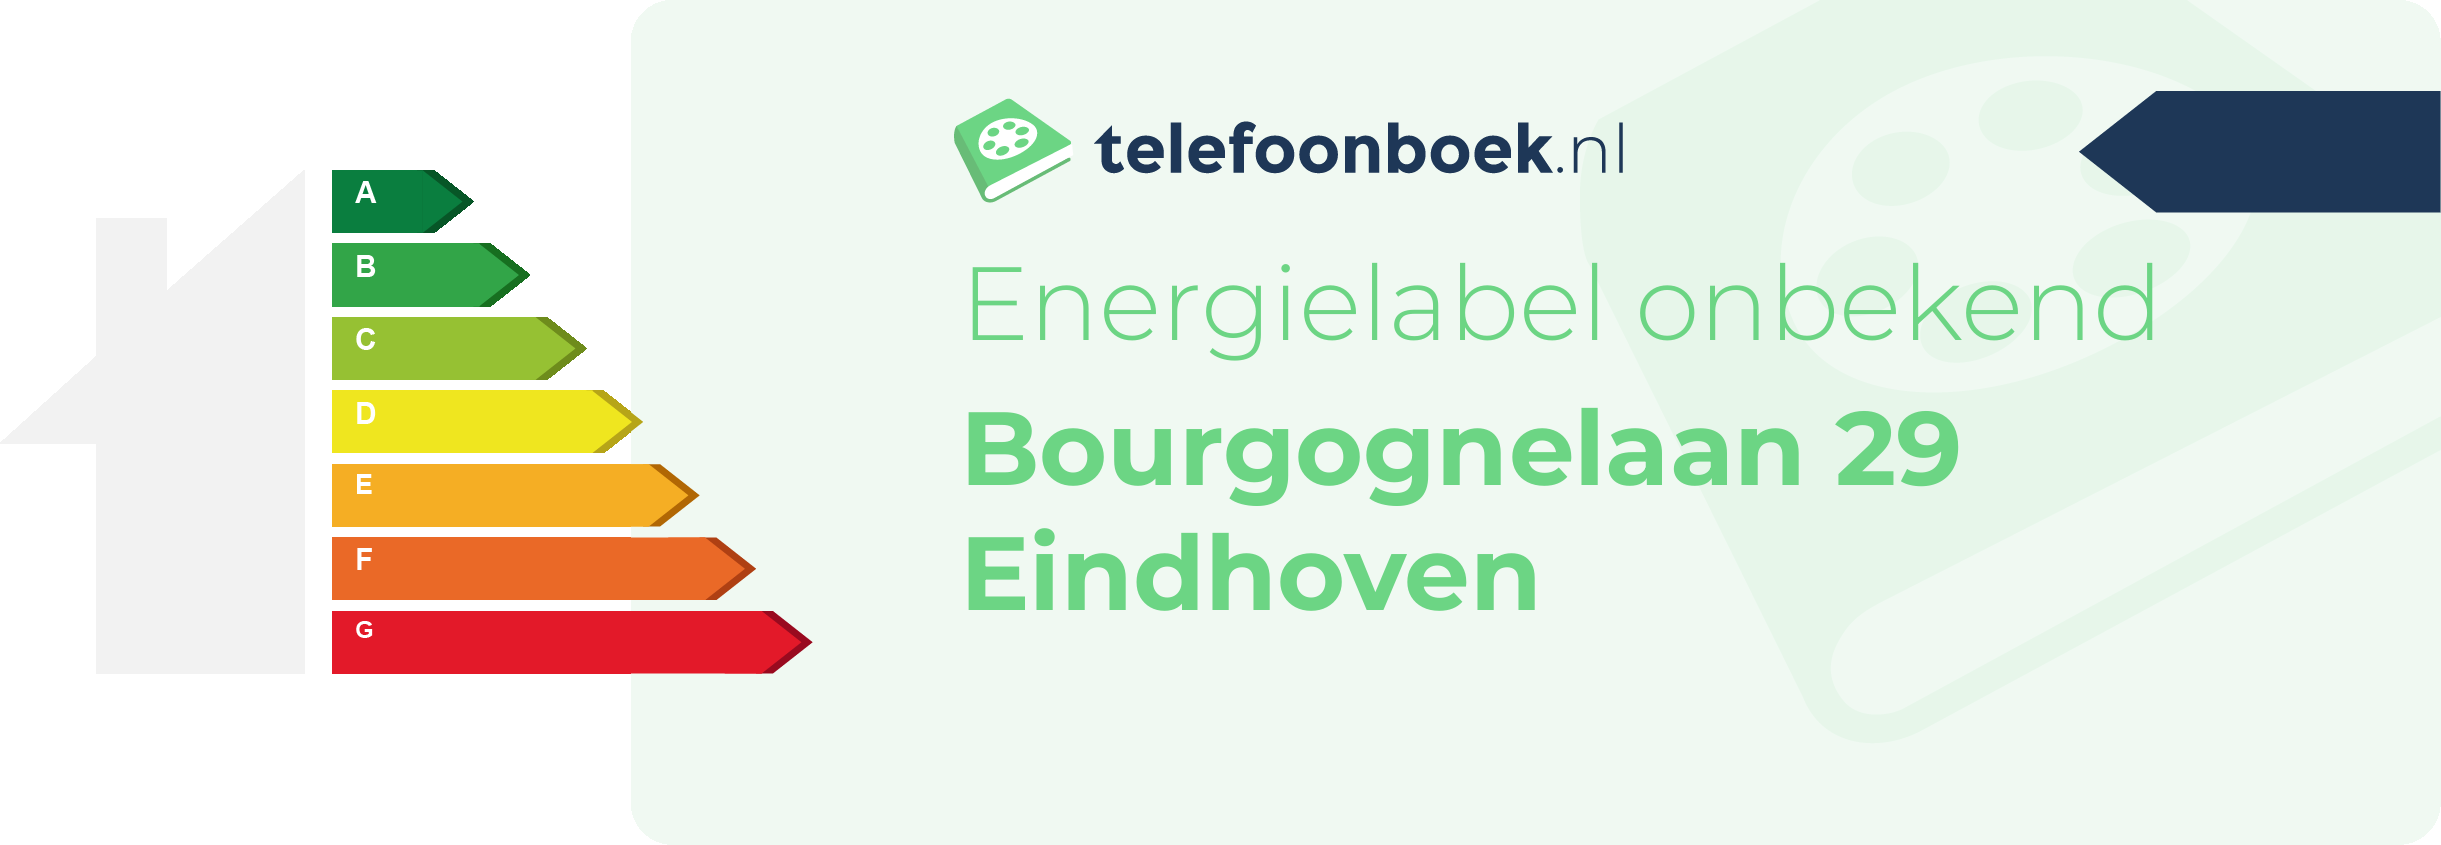 Energielabel Bourgognelaan 29 Eindhoven